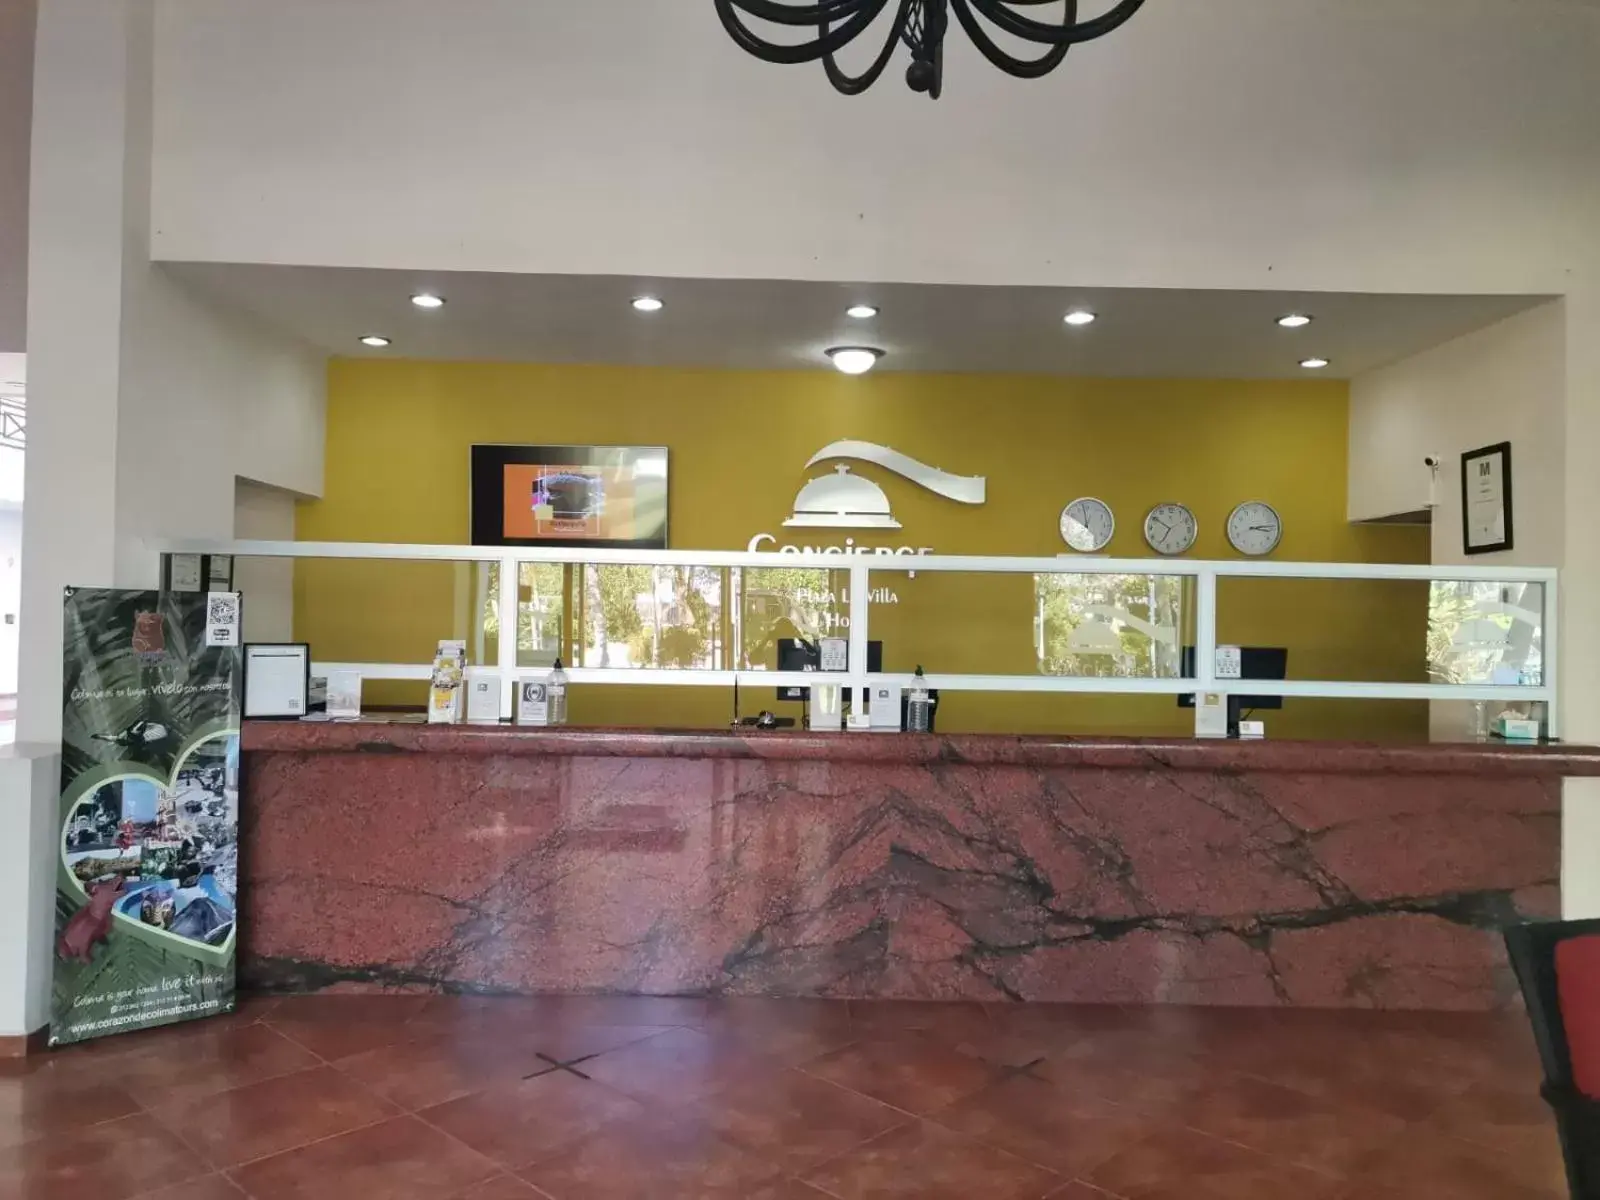 Lobby or reception in Concierge Plaza La Villa